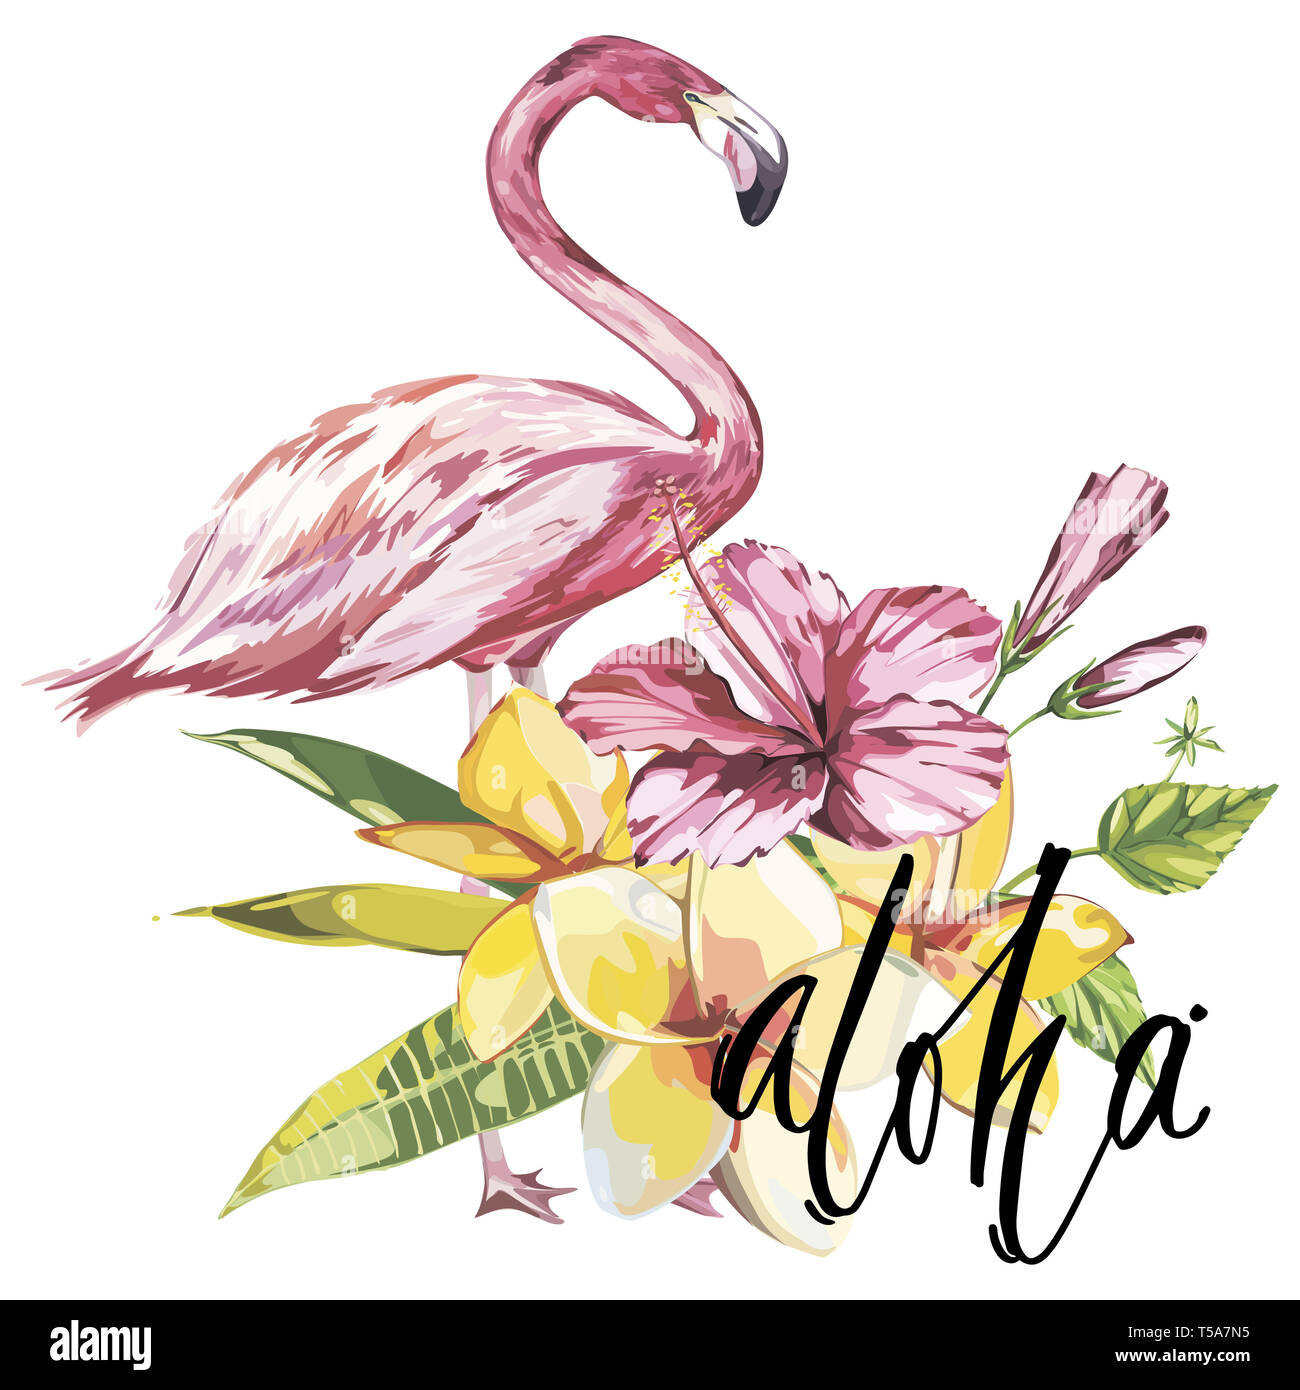 Wort - Aloha. Flamingo mit tropischen Blumen. Element für die Gestaltung von Einladungen, Filmplakate, Stoffen und anderen Objekten. Auf weiß Isoliert Stockfoto